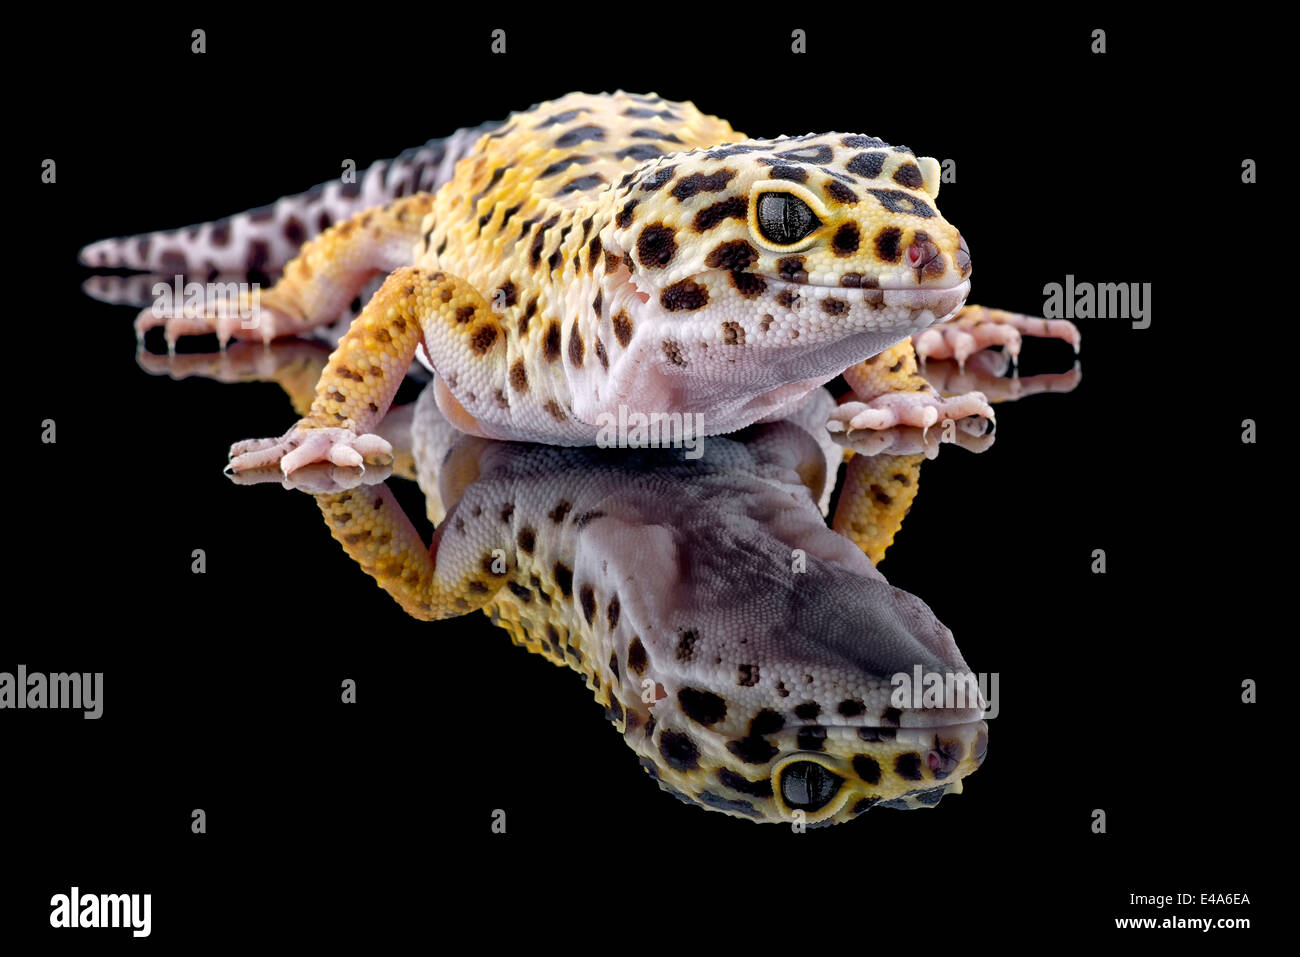 Le gecko léopard, Eublepharis macularius, avec réflexion sur fond noir Banque D'Images